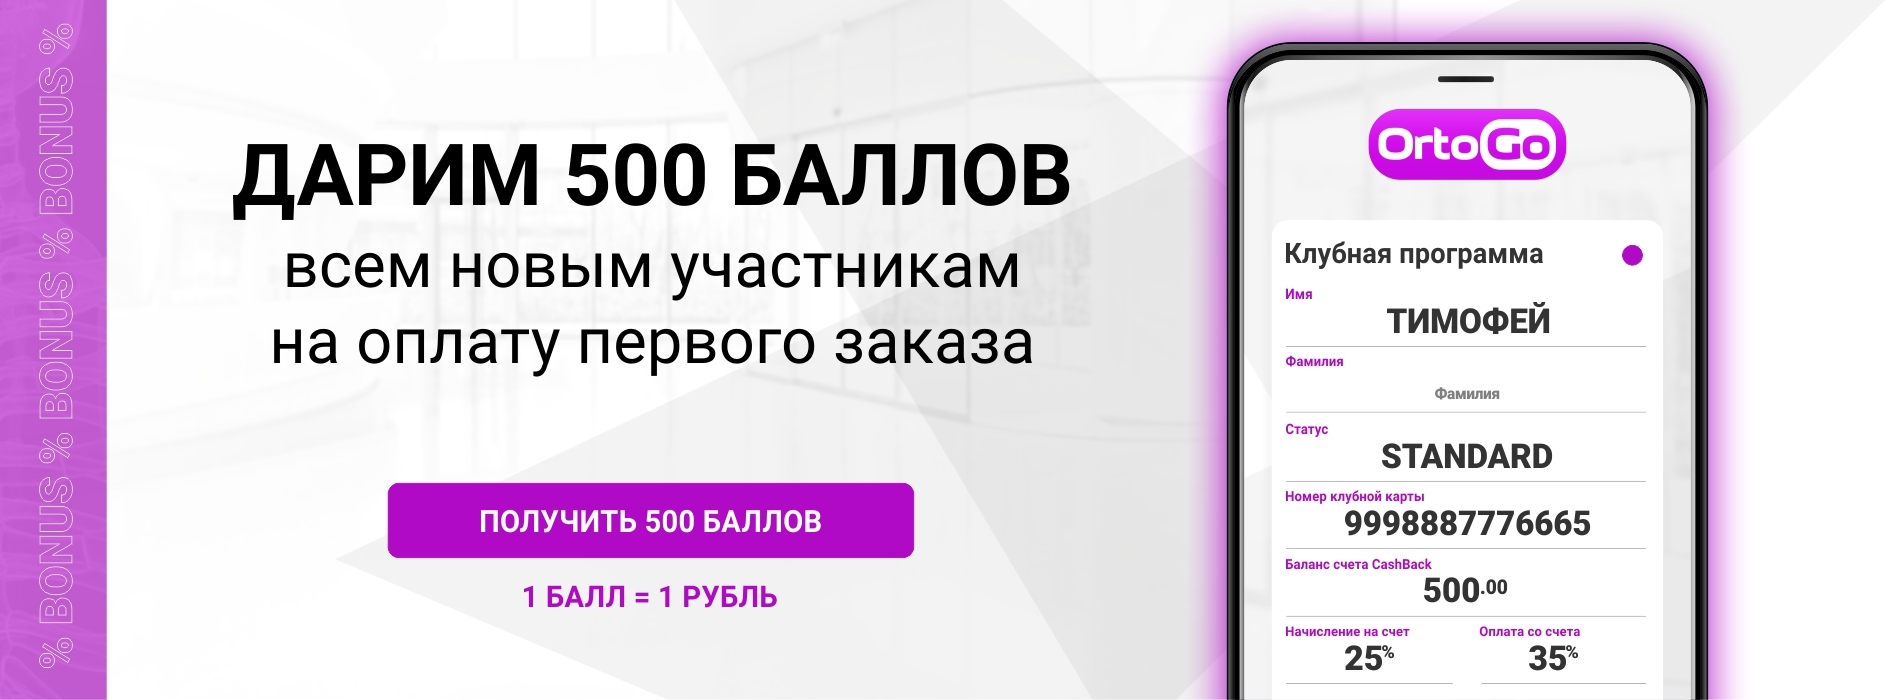 OrtoGo.ru. Клубная программа